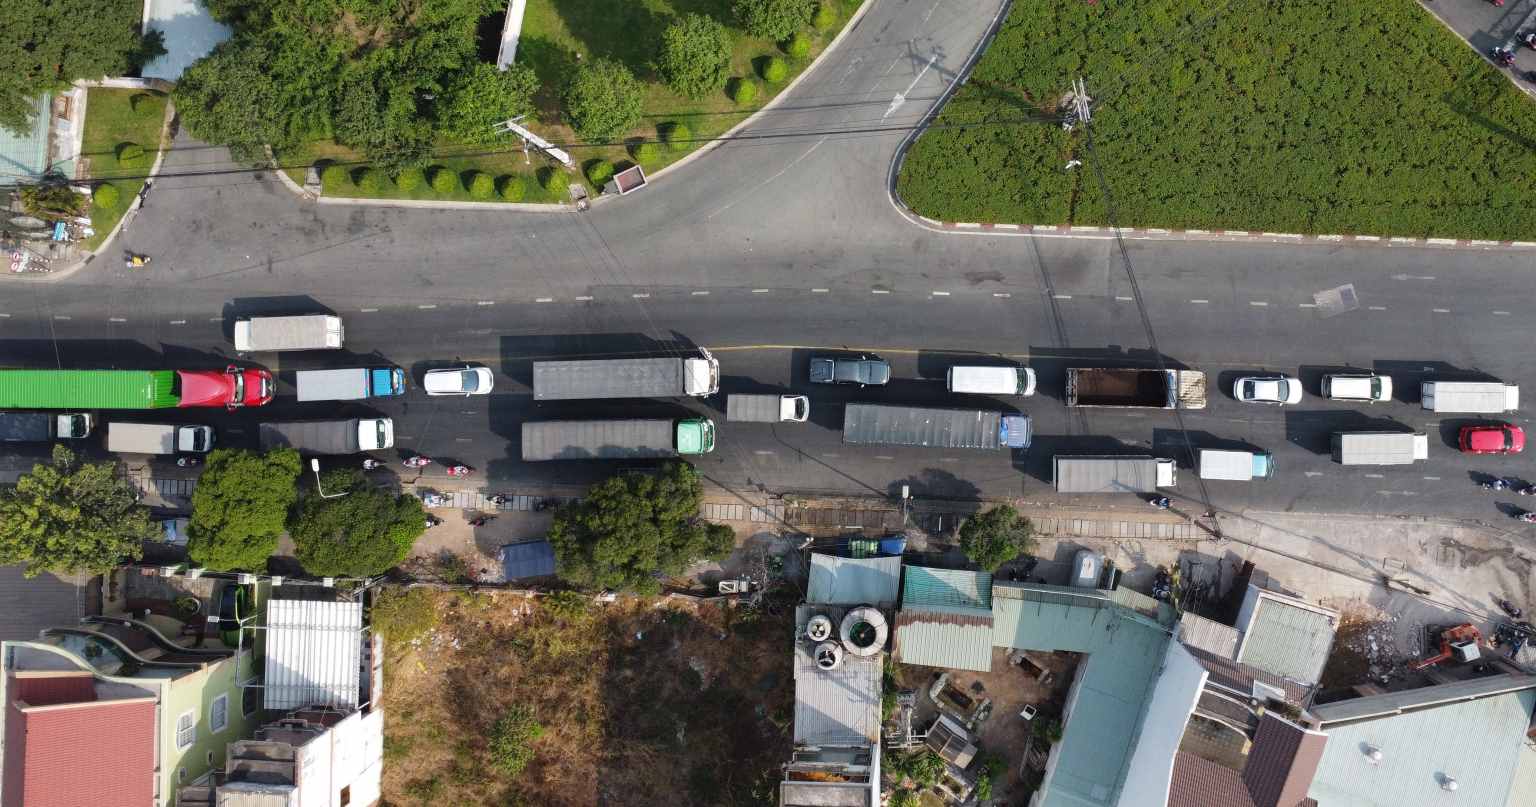 Để giải bài toán ùn tắc giao thông tại nút giao này, vừa qua UBND tỉnh Bình Dương đã phê duyệt dự án xây dựng hầm chui tại nút giao ngã 5 Phước Kiến.